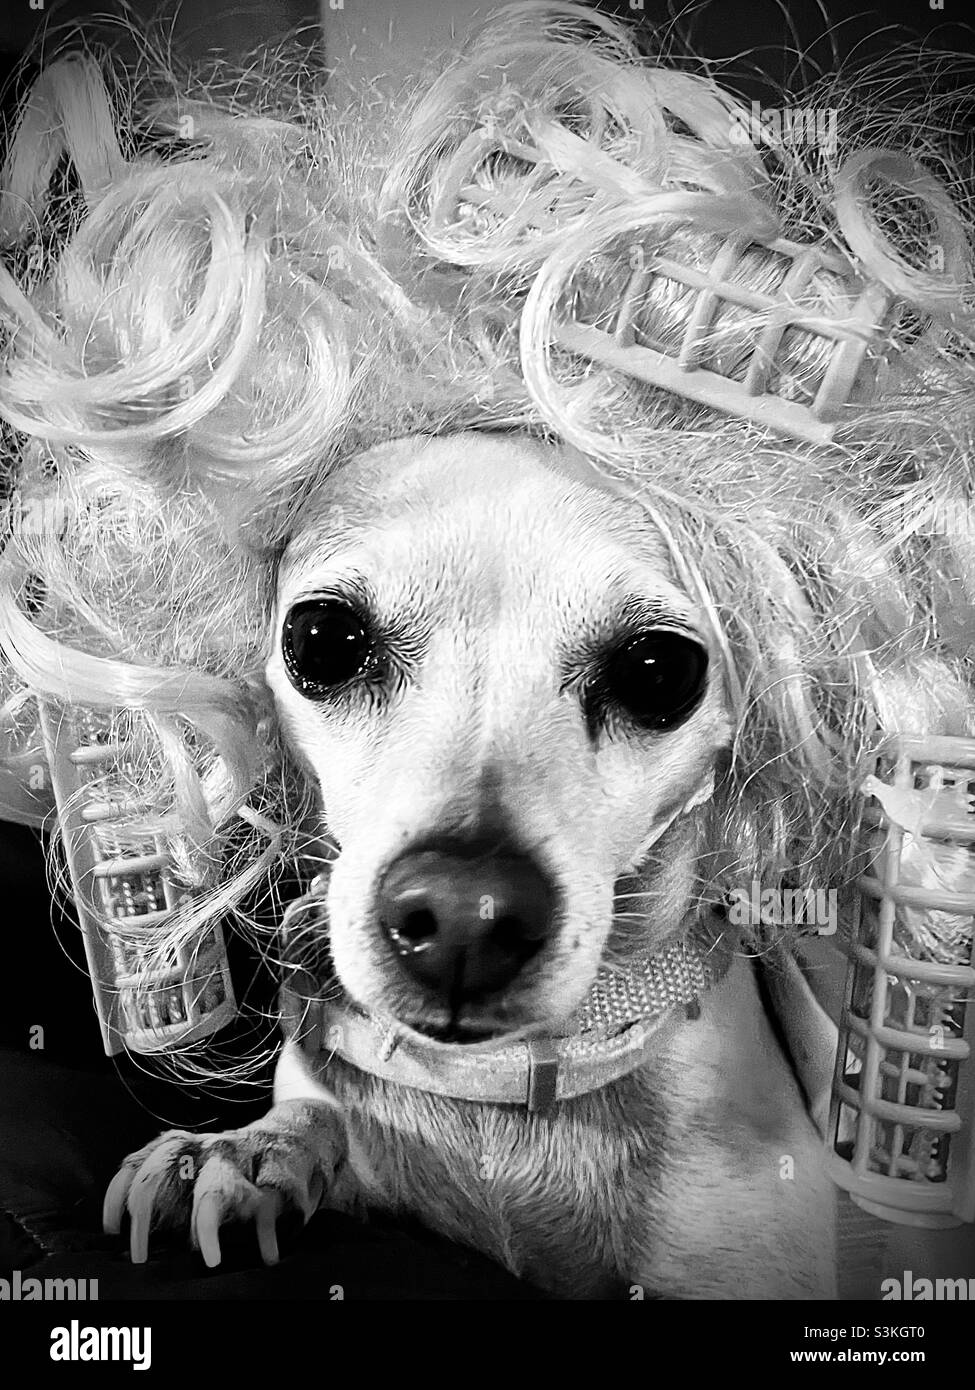 Schwarz-weißes Nahaufnahme-Porträt eines kitschig gekleideten chihuahua Hundes in einer Perücke mit in die Perücke gerollten Haarlocken. Der Hund blickt direkt auf die Kamera mit dem Gesicht nach vorne. Dummes und lustiges Bild. Stockfoto